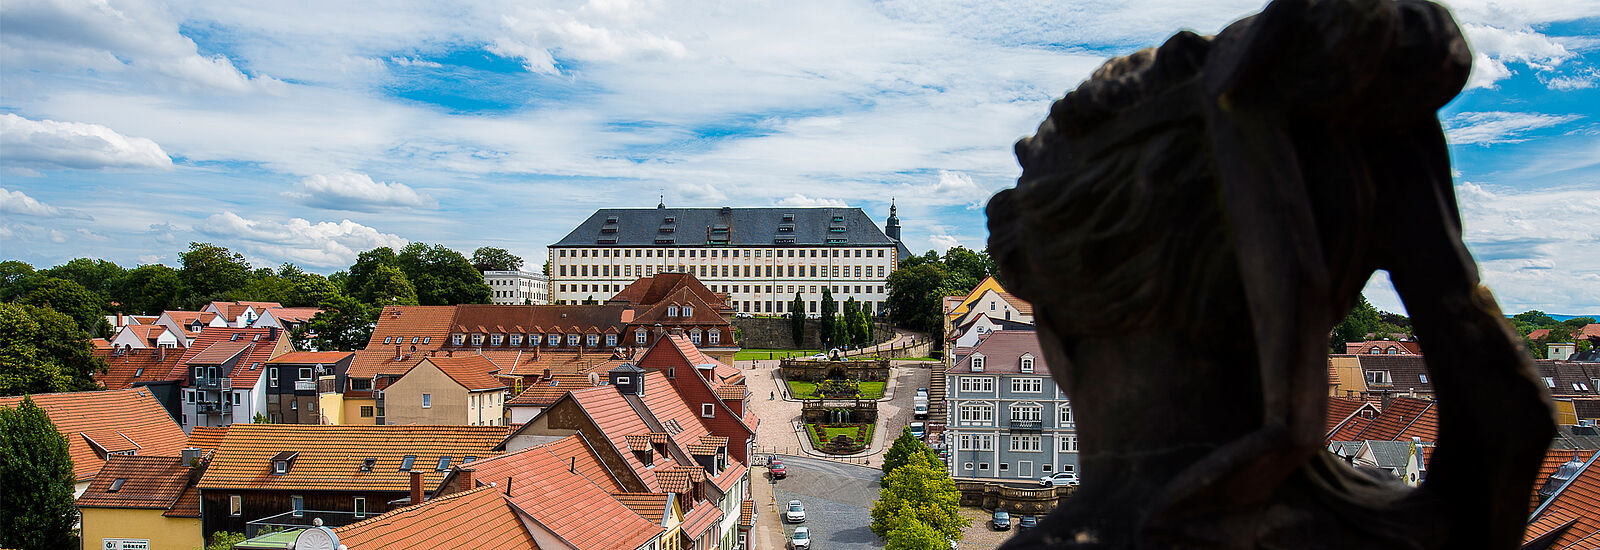 Blick auf Schloss Friedenstein Gotha ©J.Schröter